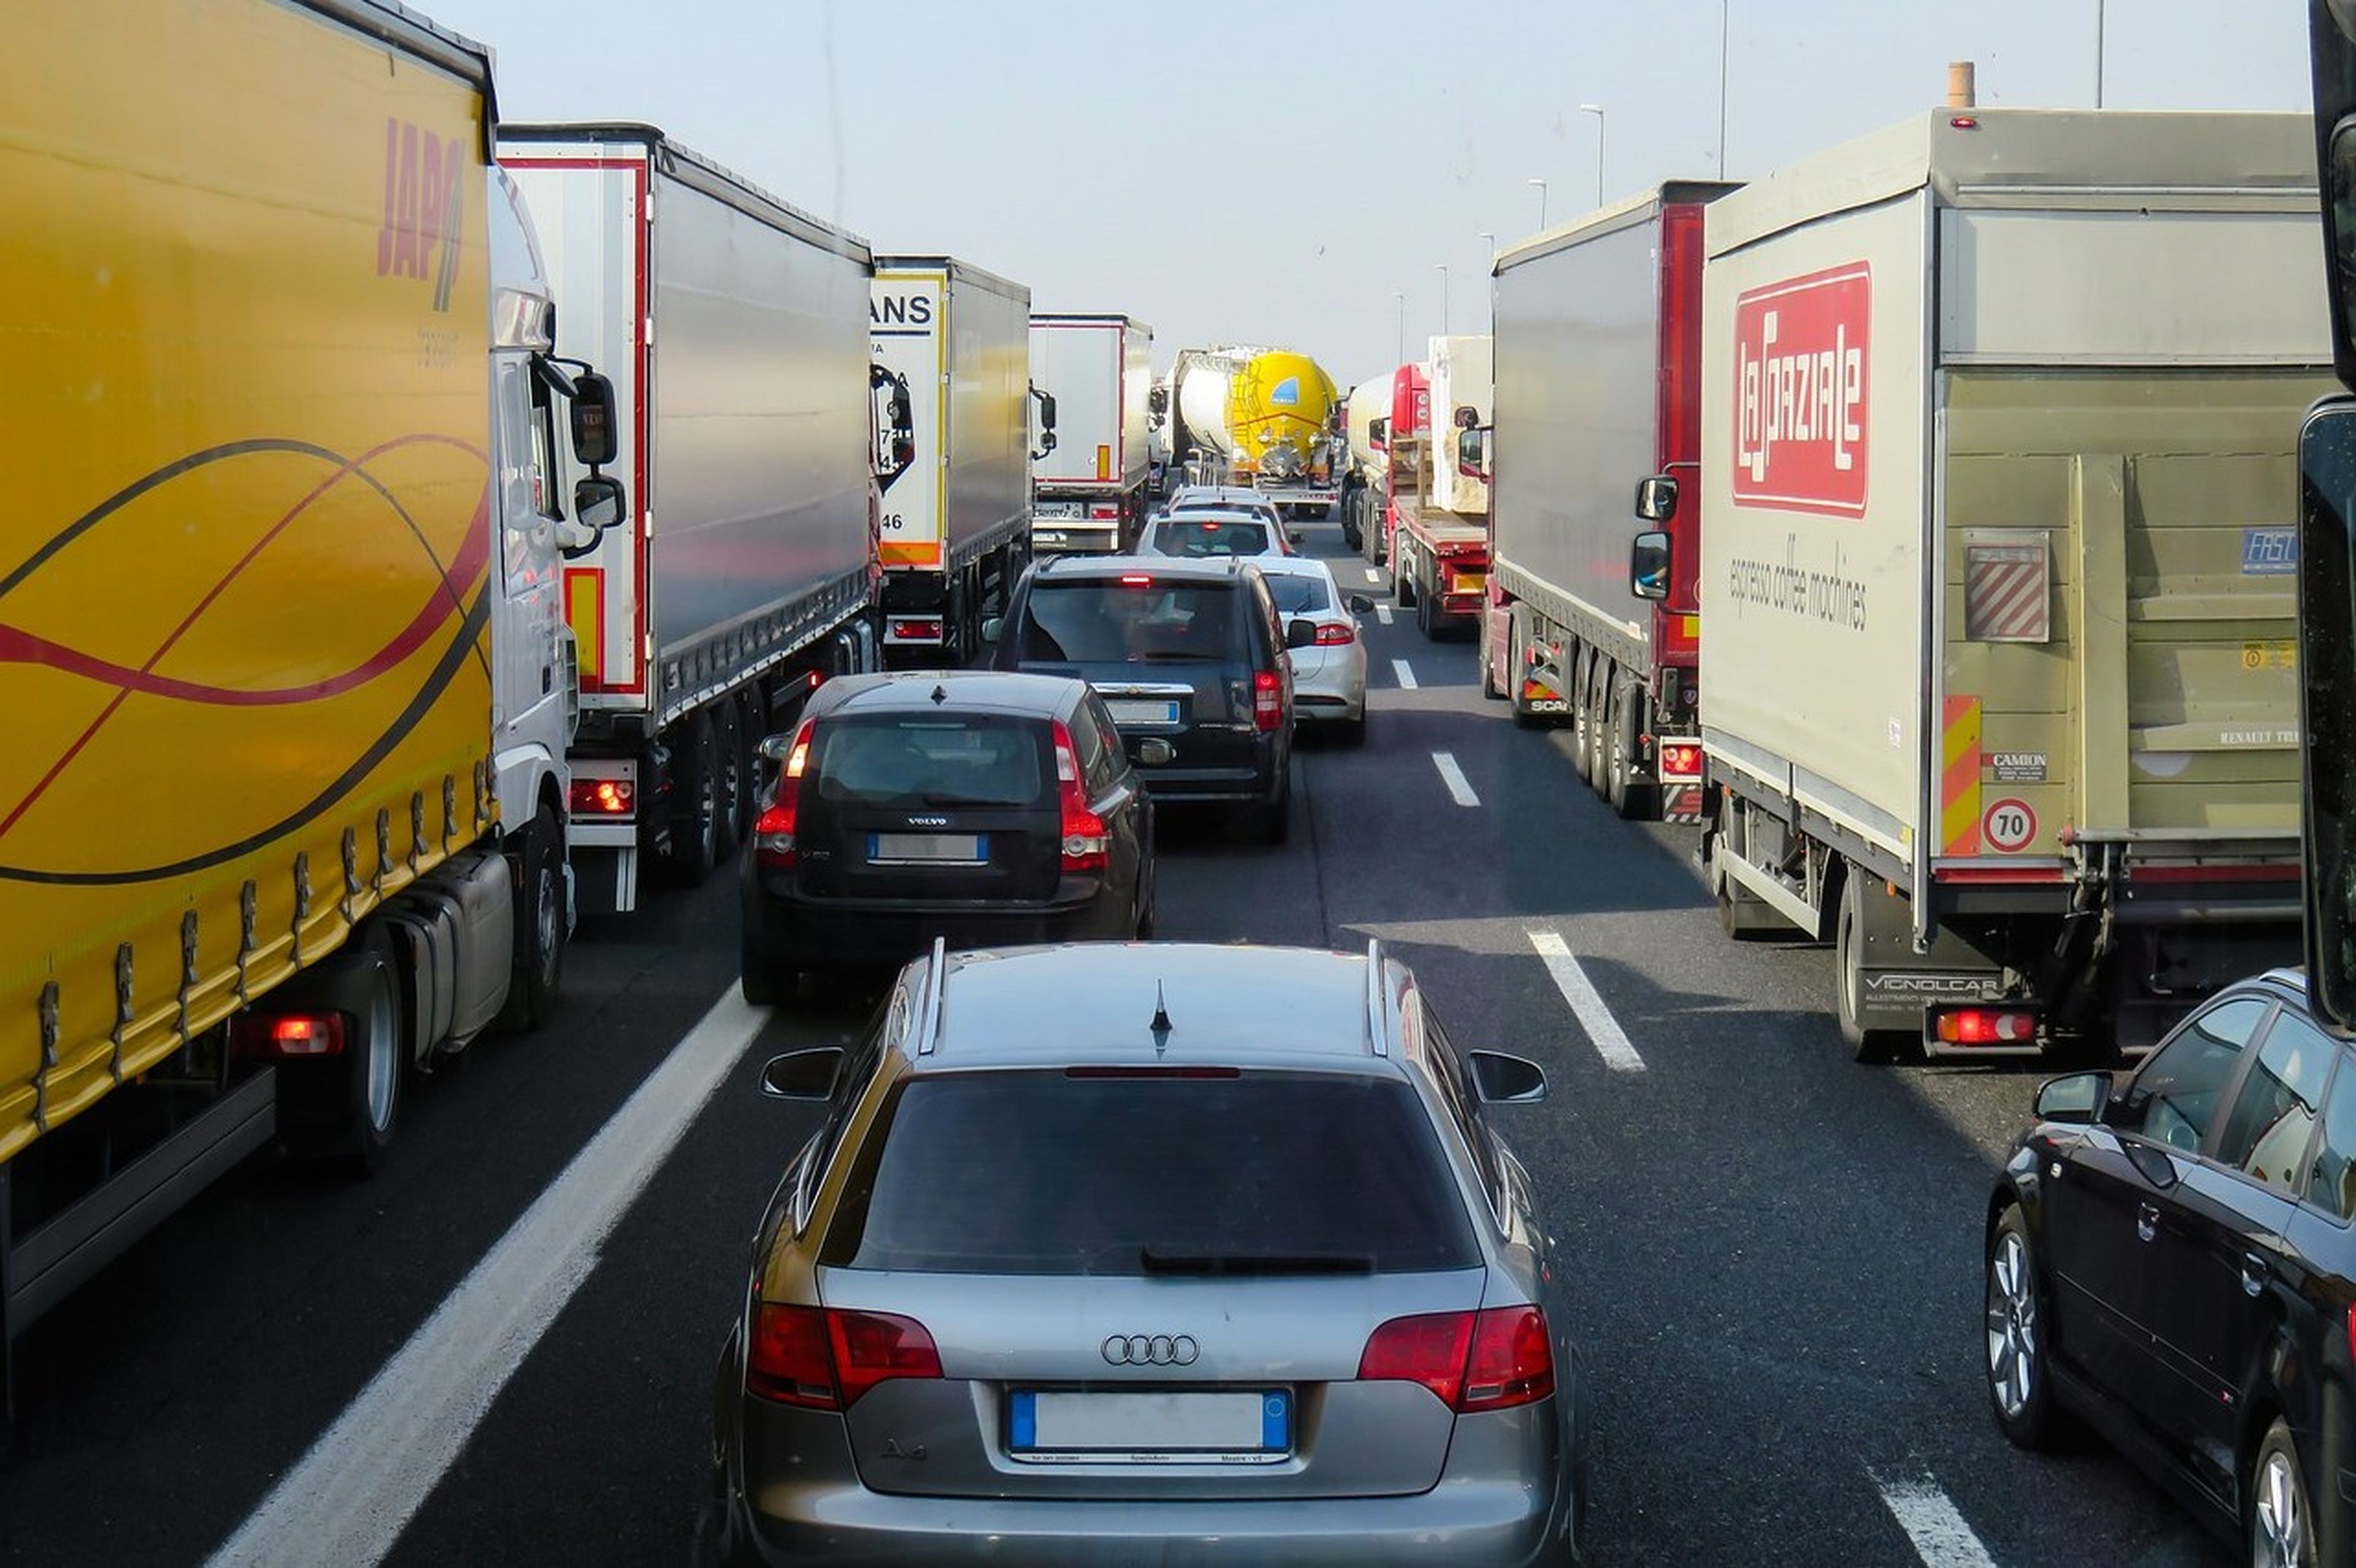 La DGT está pensando seriamente quitar camiones de la carretera para evitar accidentes